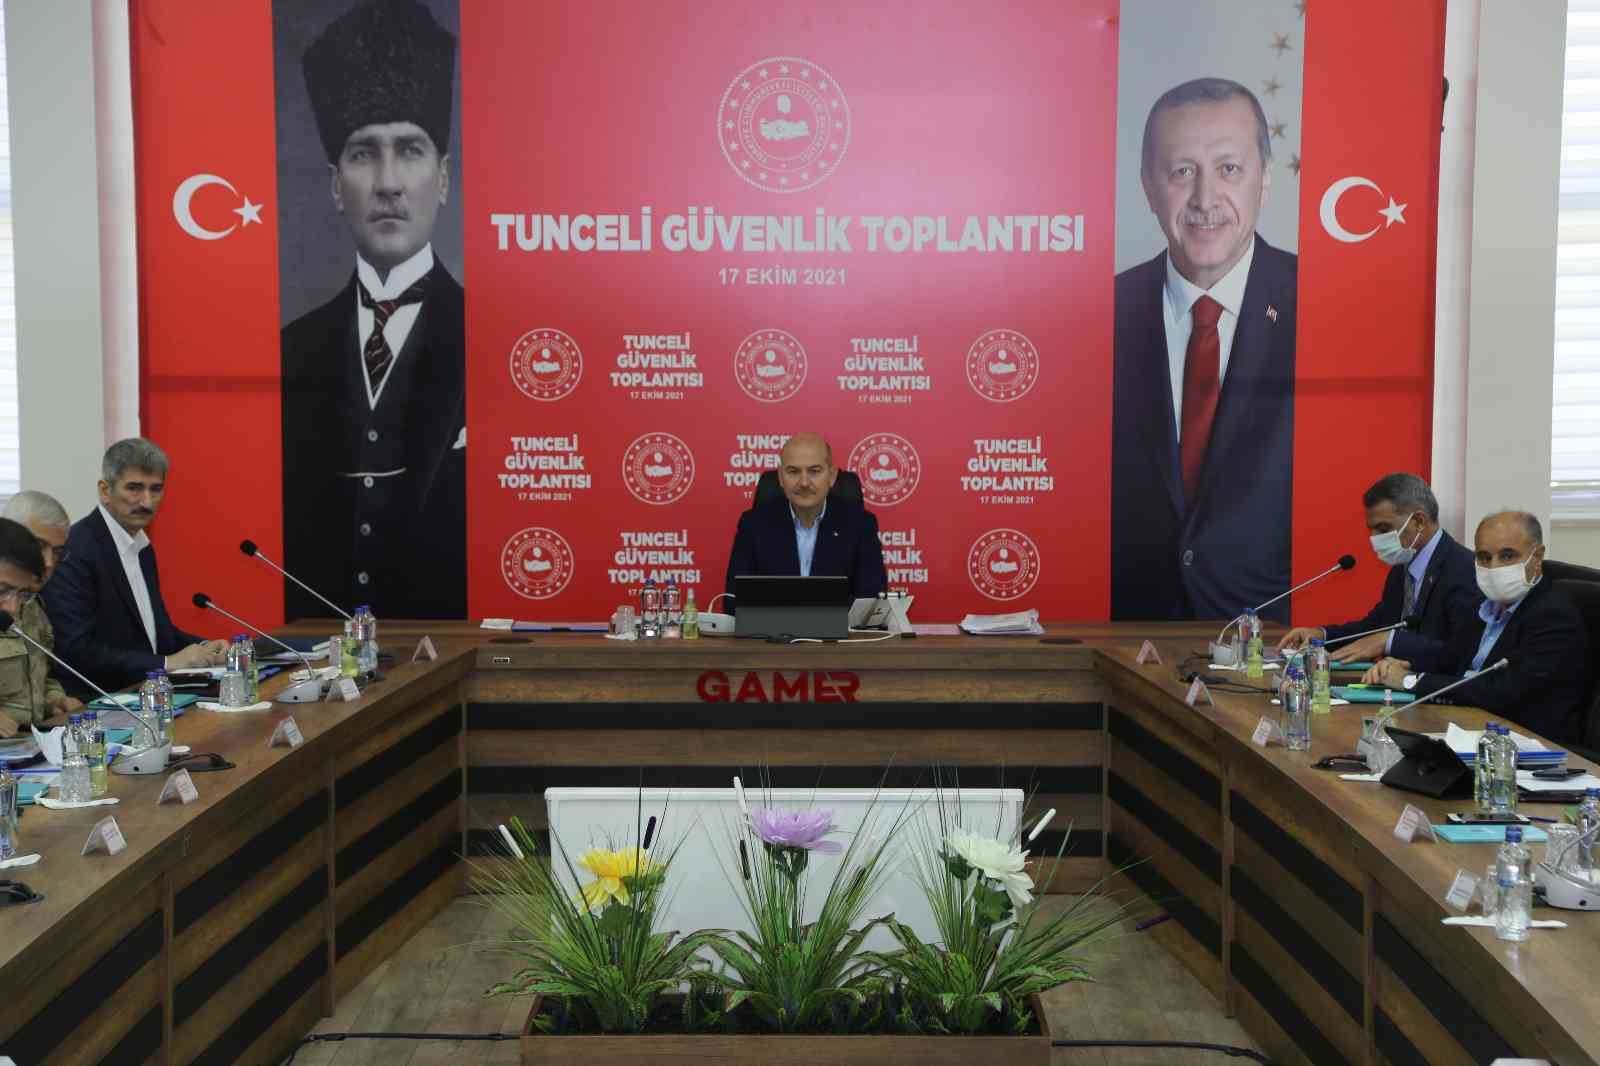 İçişleri Bakanı Süleyman Soylu, Tunceli’de Güvenlik Toplantısına katıldı #tunceli